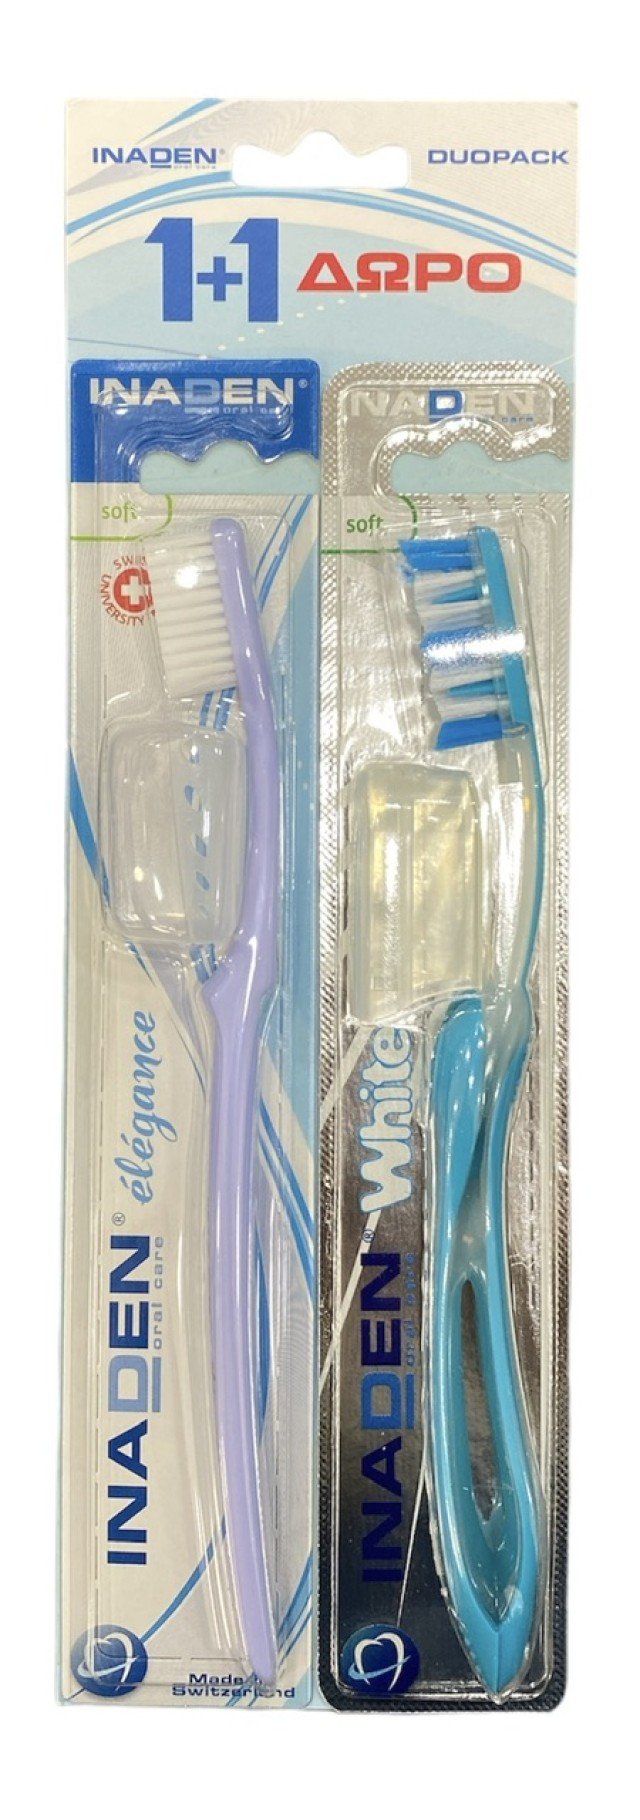 Inaden Οδοντόβουρτσα Whitening Soft Χρώμα Γαλάζιο + Οδοντόβουρτσα Elegance Soft Χρώμα Λιλά, 2τμχ